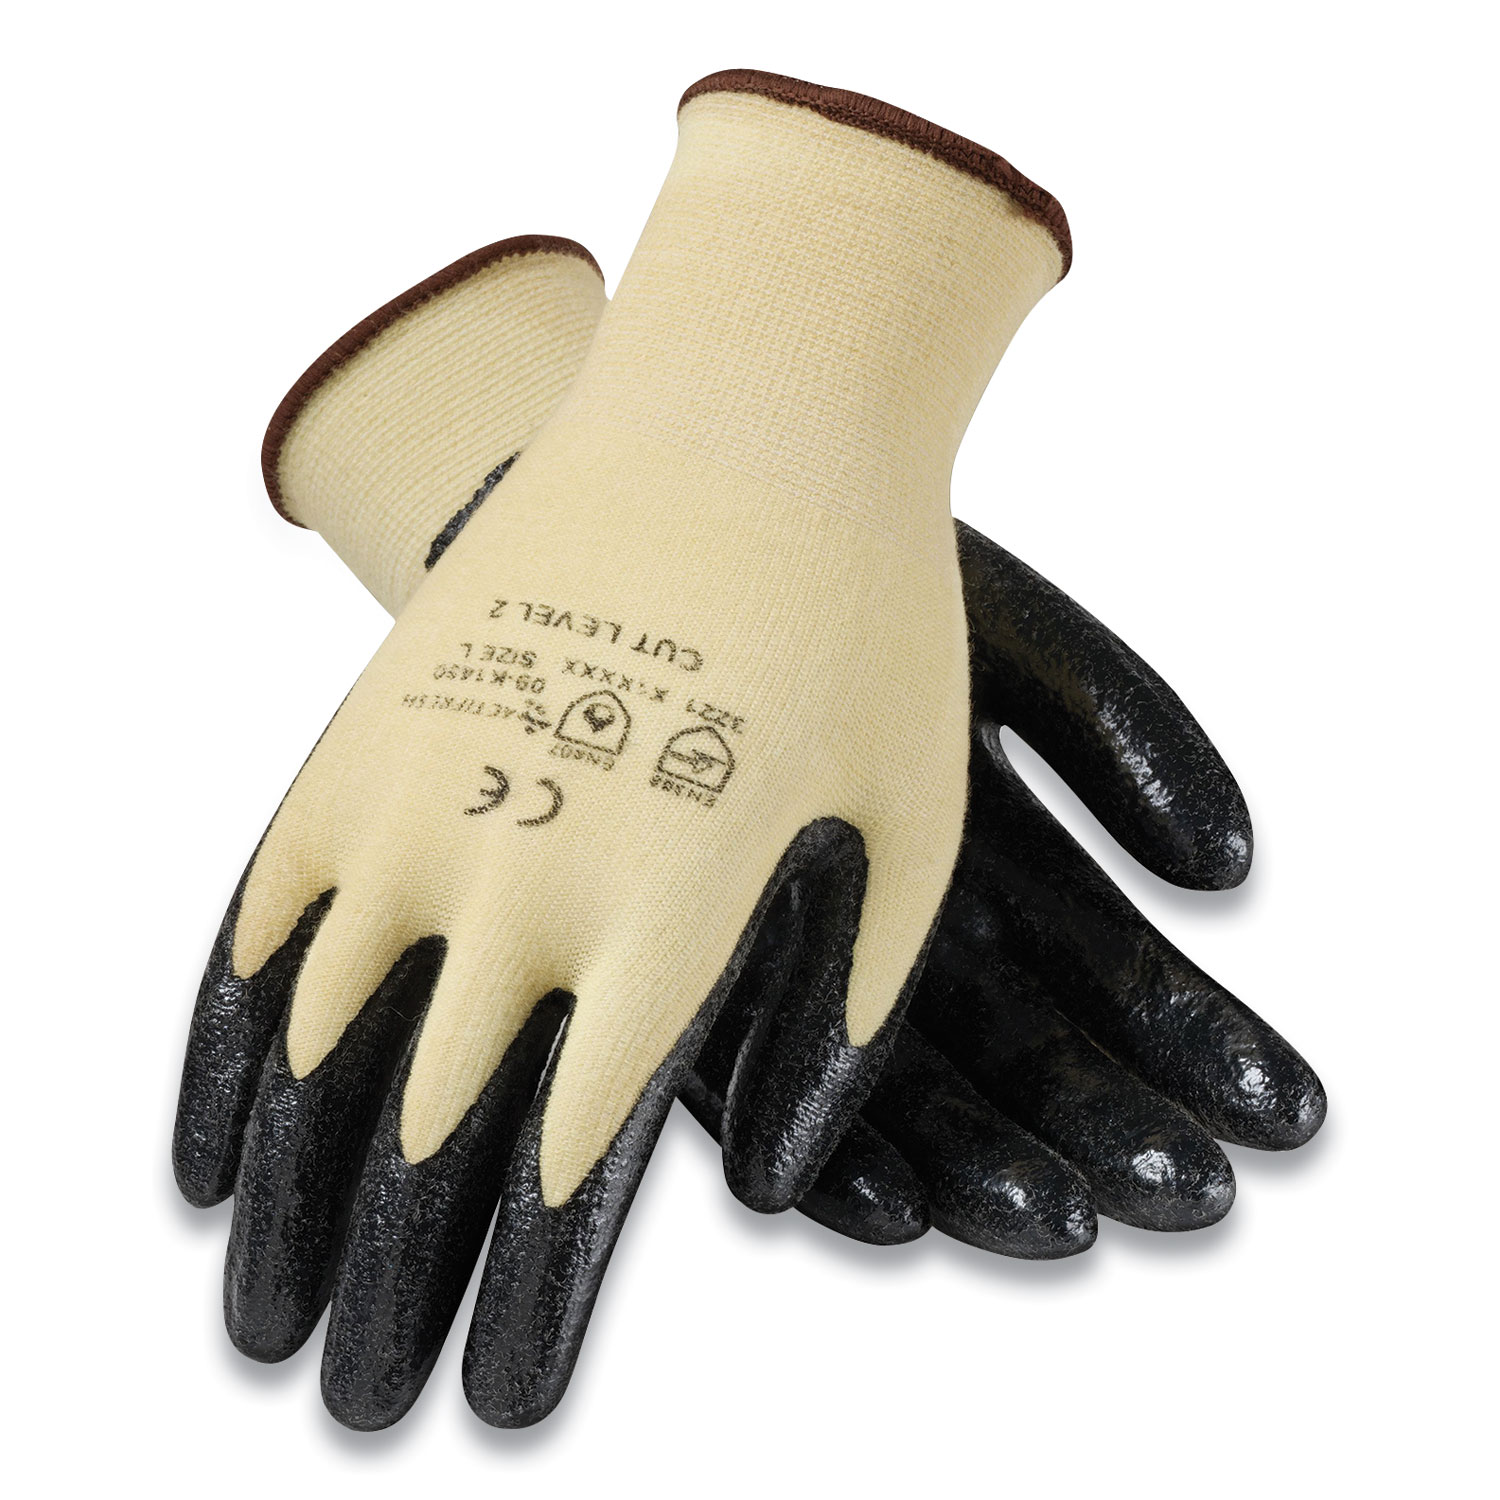  G-Tek 09-K1450/L KEV Seamless Knit Kevlar Gloves, Large, Yellow/Black, 12 Pairs (PID179392) 